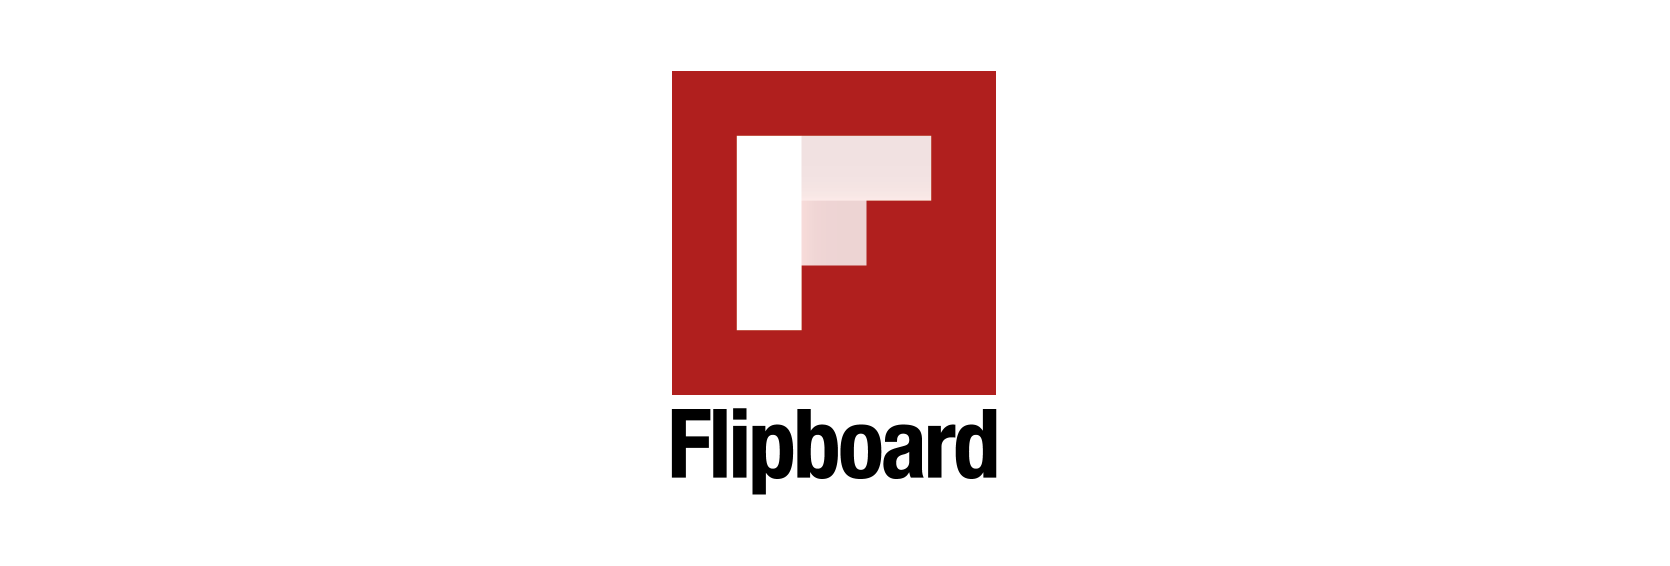 Flipboard Logo - Flipboard Logos